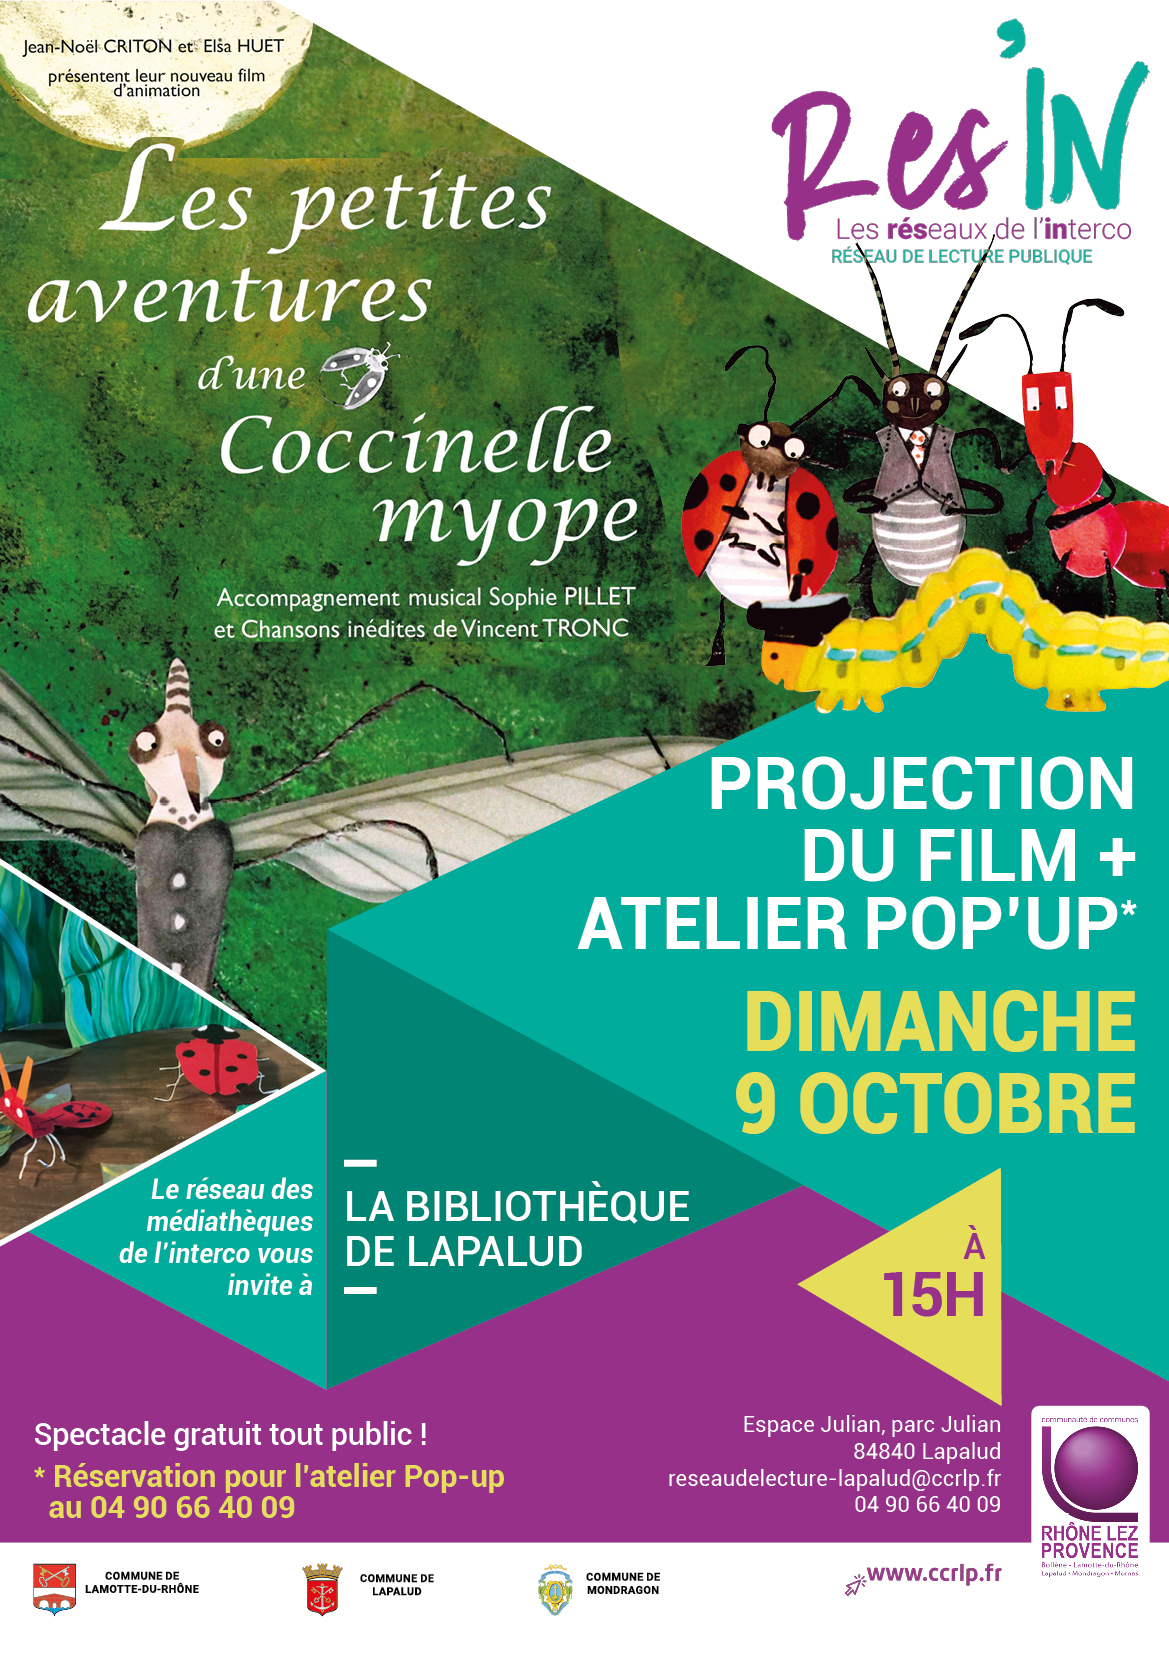 Projection film ＂Les petites aventures d'une coccinelle myope＂ + atelier Pop'up - Dimanche 9 octobre - Bibliothèque Lapalud